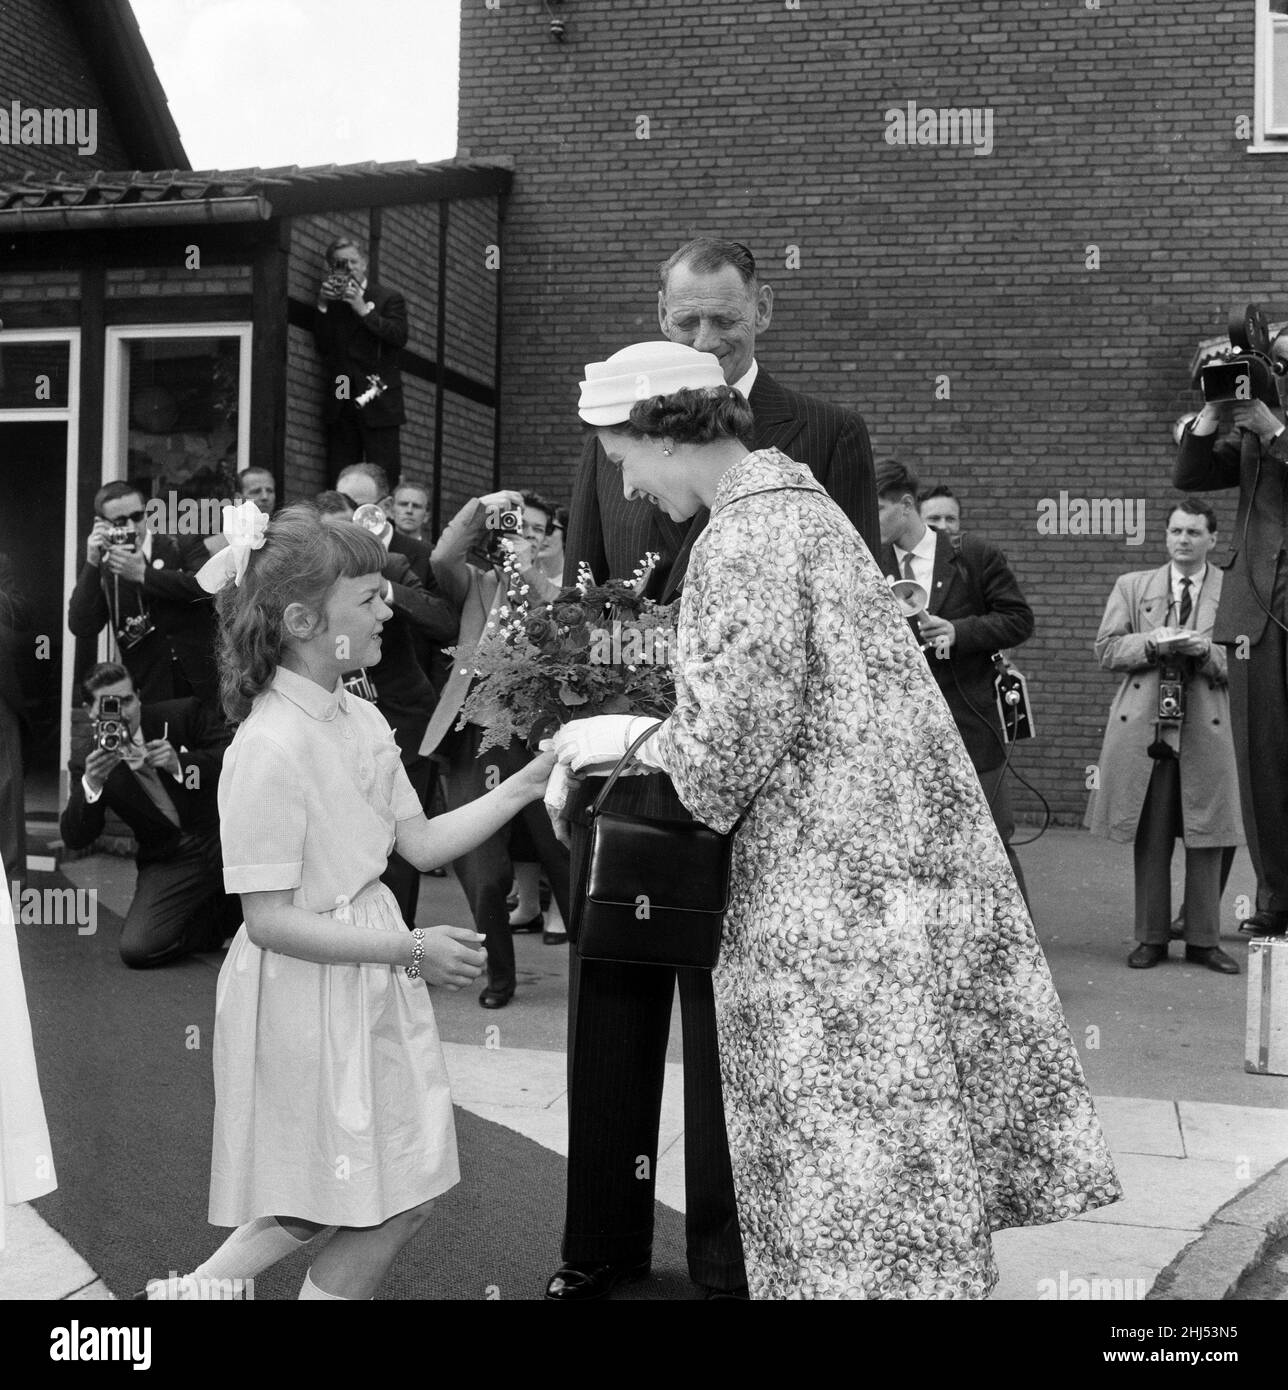 Königin Elizabeth II. Und Prinz Philip, Herzog von Edinburgh, besuchen Dänemark. Königin Elizabeth erhält von einem Mädchen einen Strauß. 22nd Mai 1957. Stockfoto